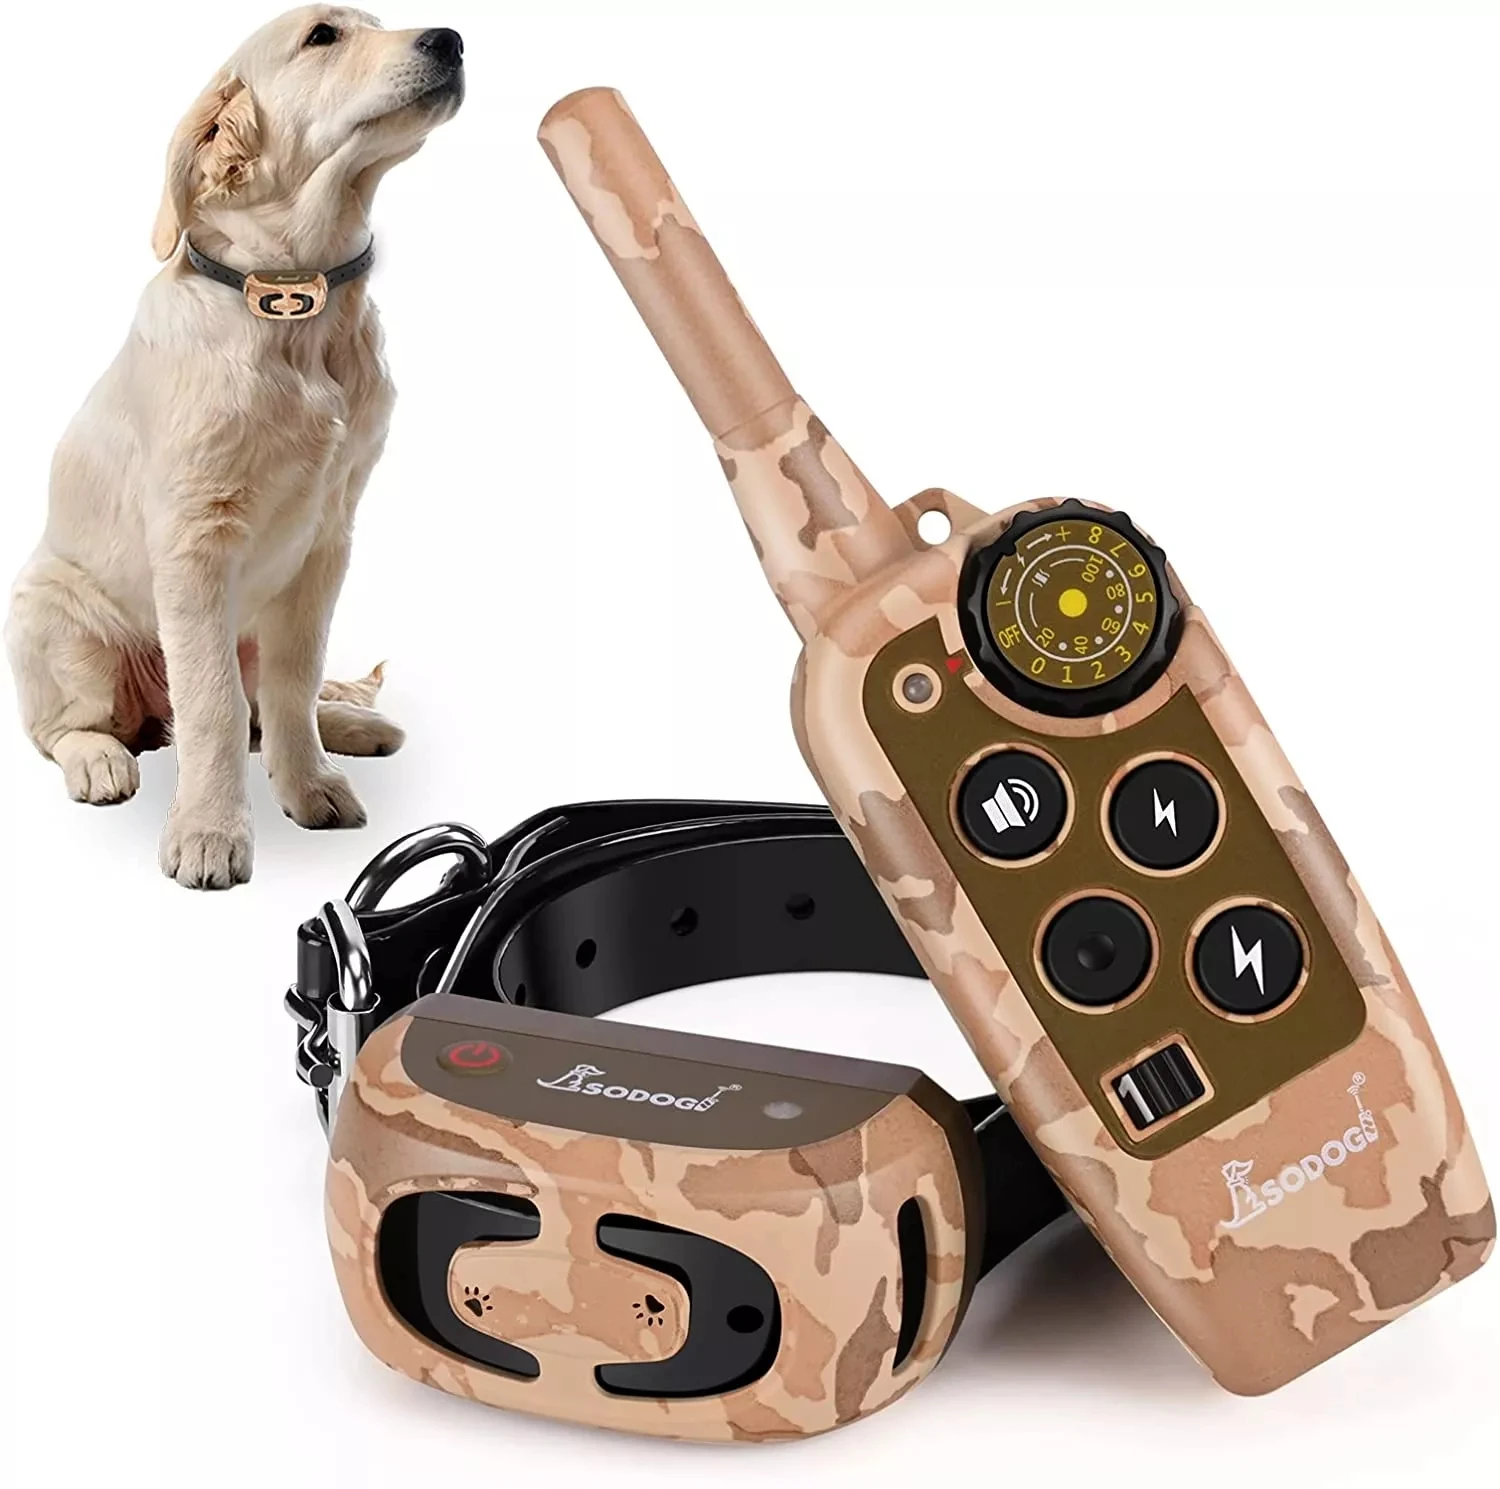 Coleira de cão Impermeável e Recarregável Elétrica animal de Estimação Controle Remoto com Display LCD Choque, Vibração, Som laranja coleira para cães 1-2